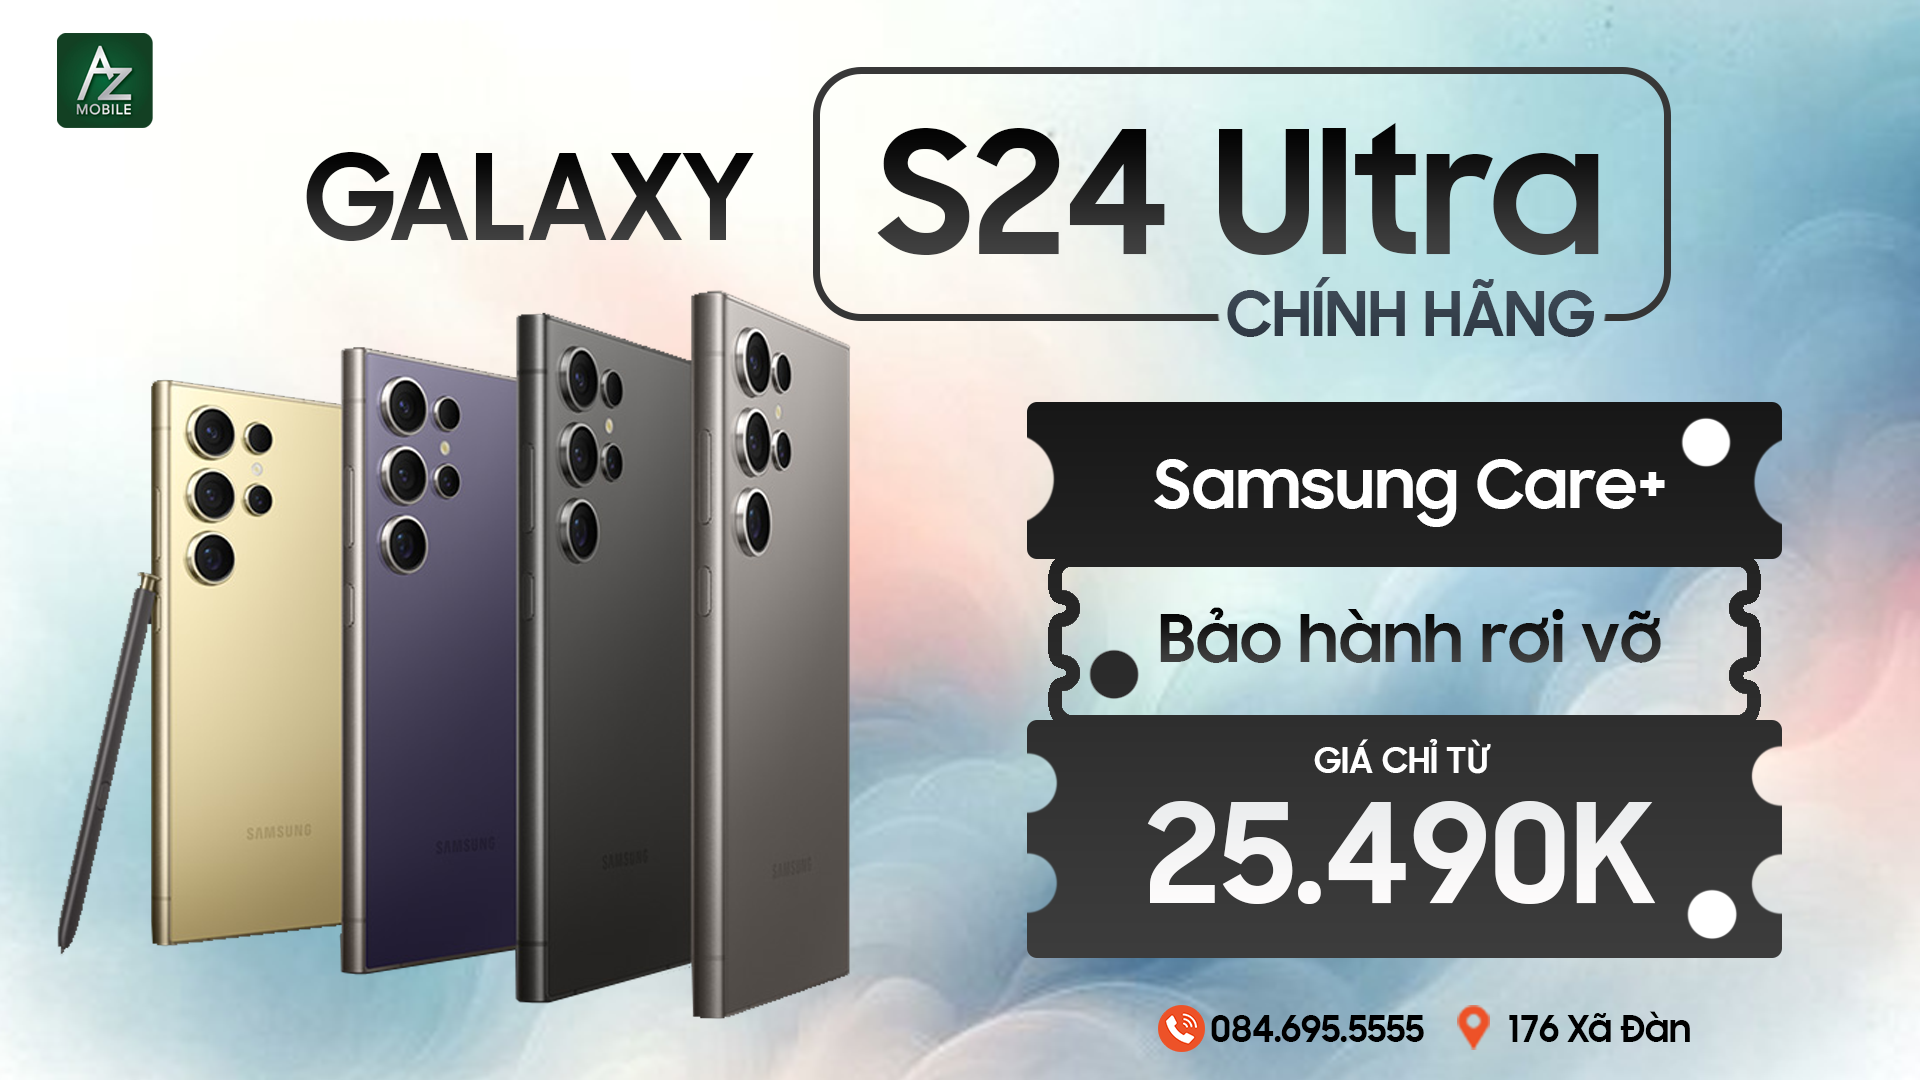 Galaxy S24 Ultra chính hãng